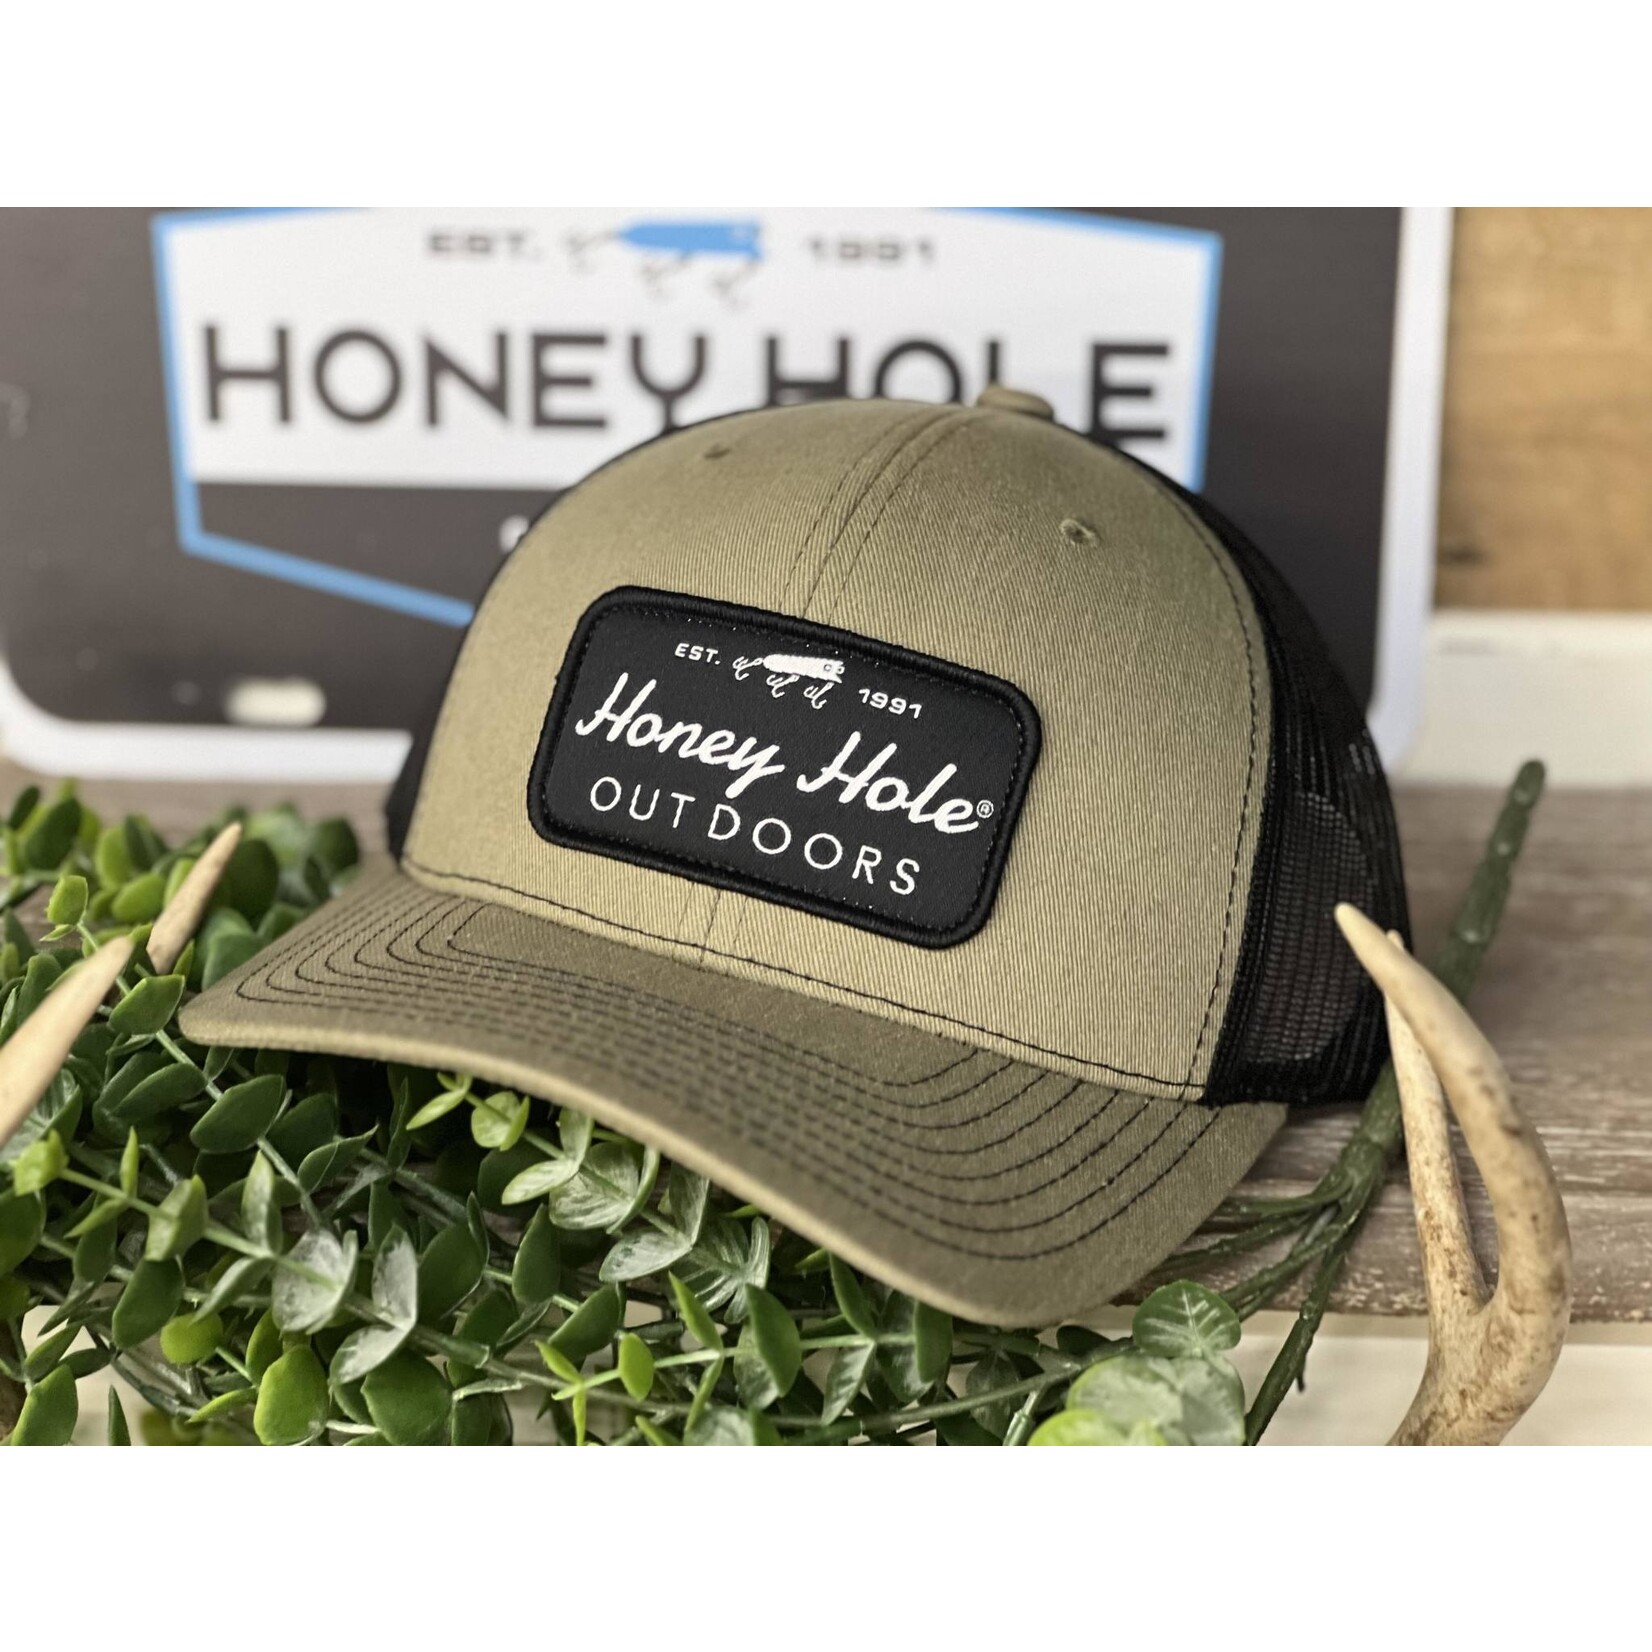 Honey Hole Outdoors Honey Hole Outdoors OG REC Logo Patch Snapback Hat